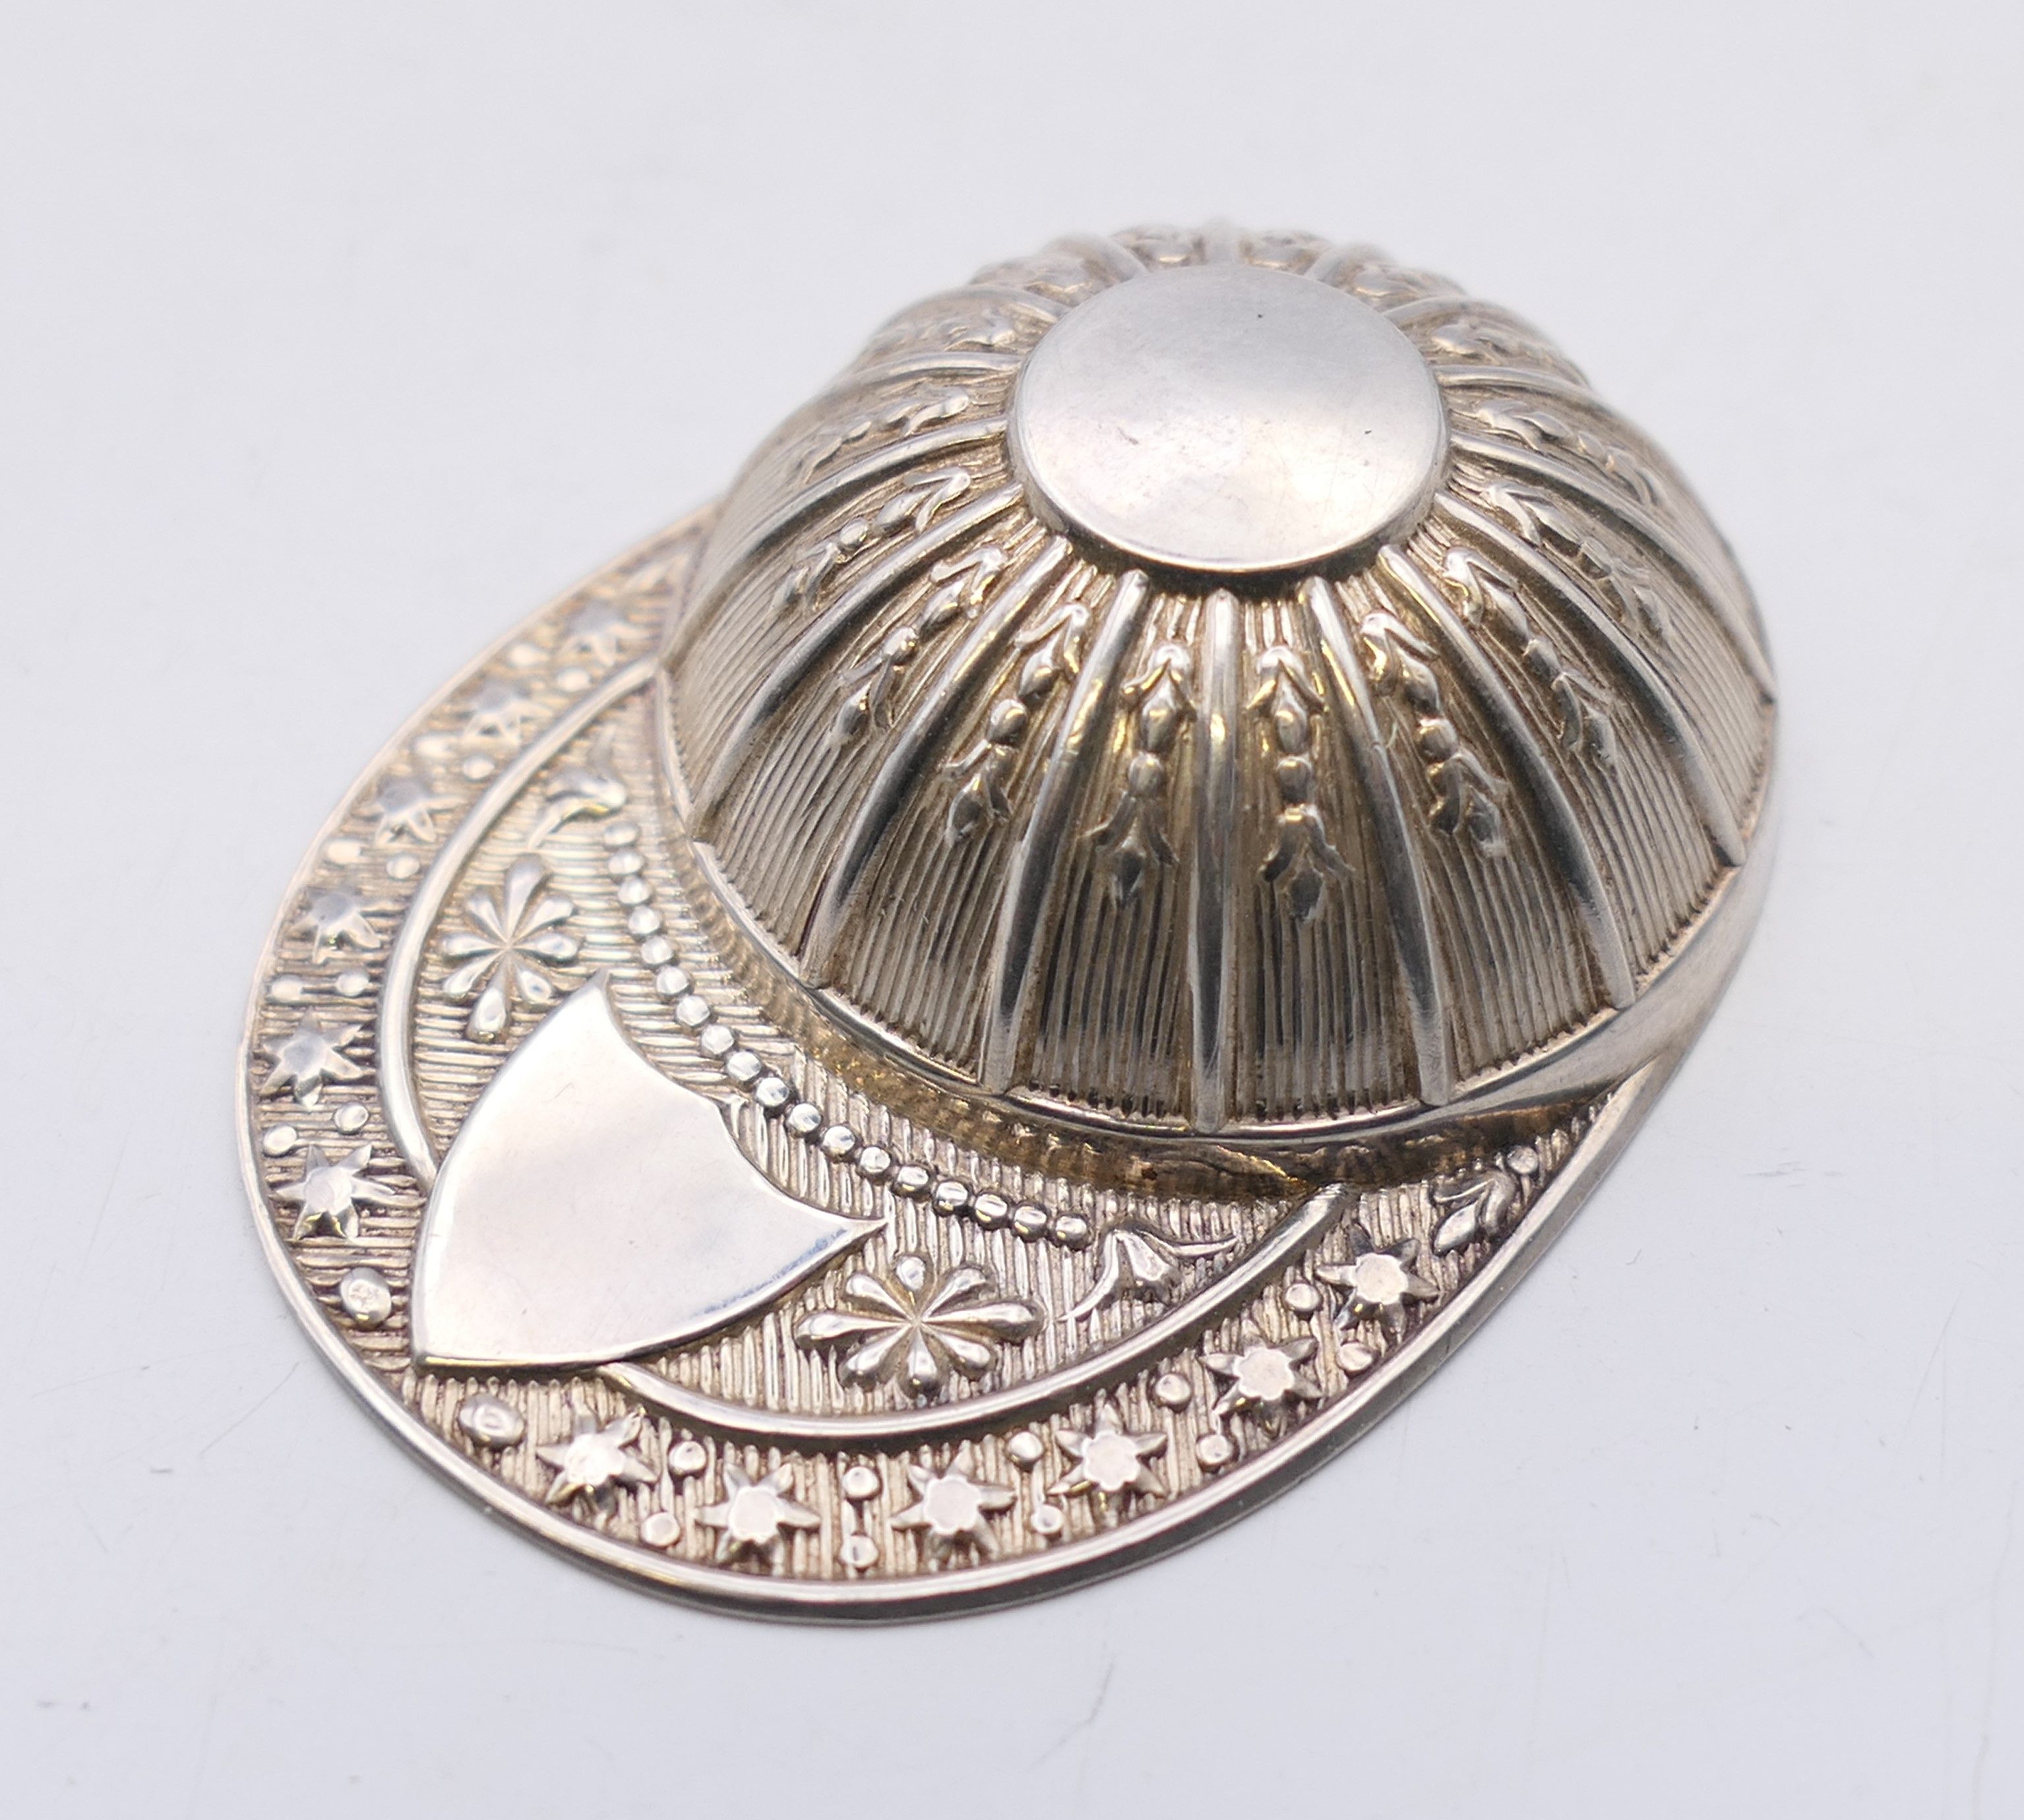 A silver jockey's cap form caddy spoon. 5.25 cm x 4 cm. 11.1 grammes.